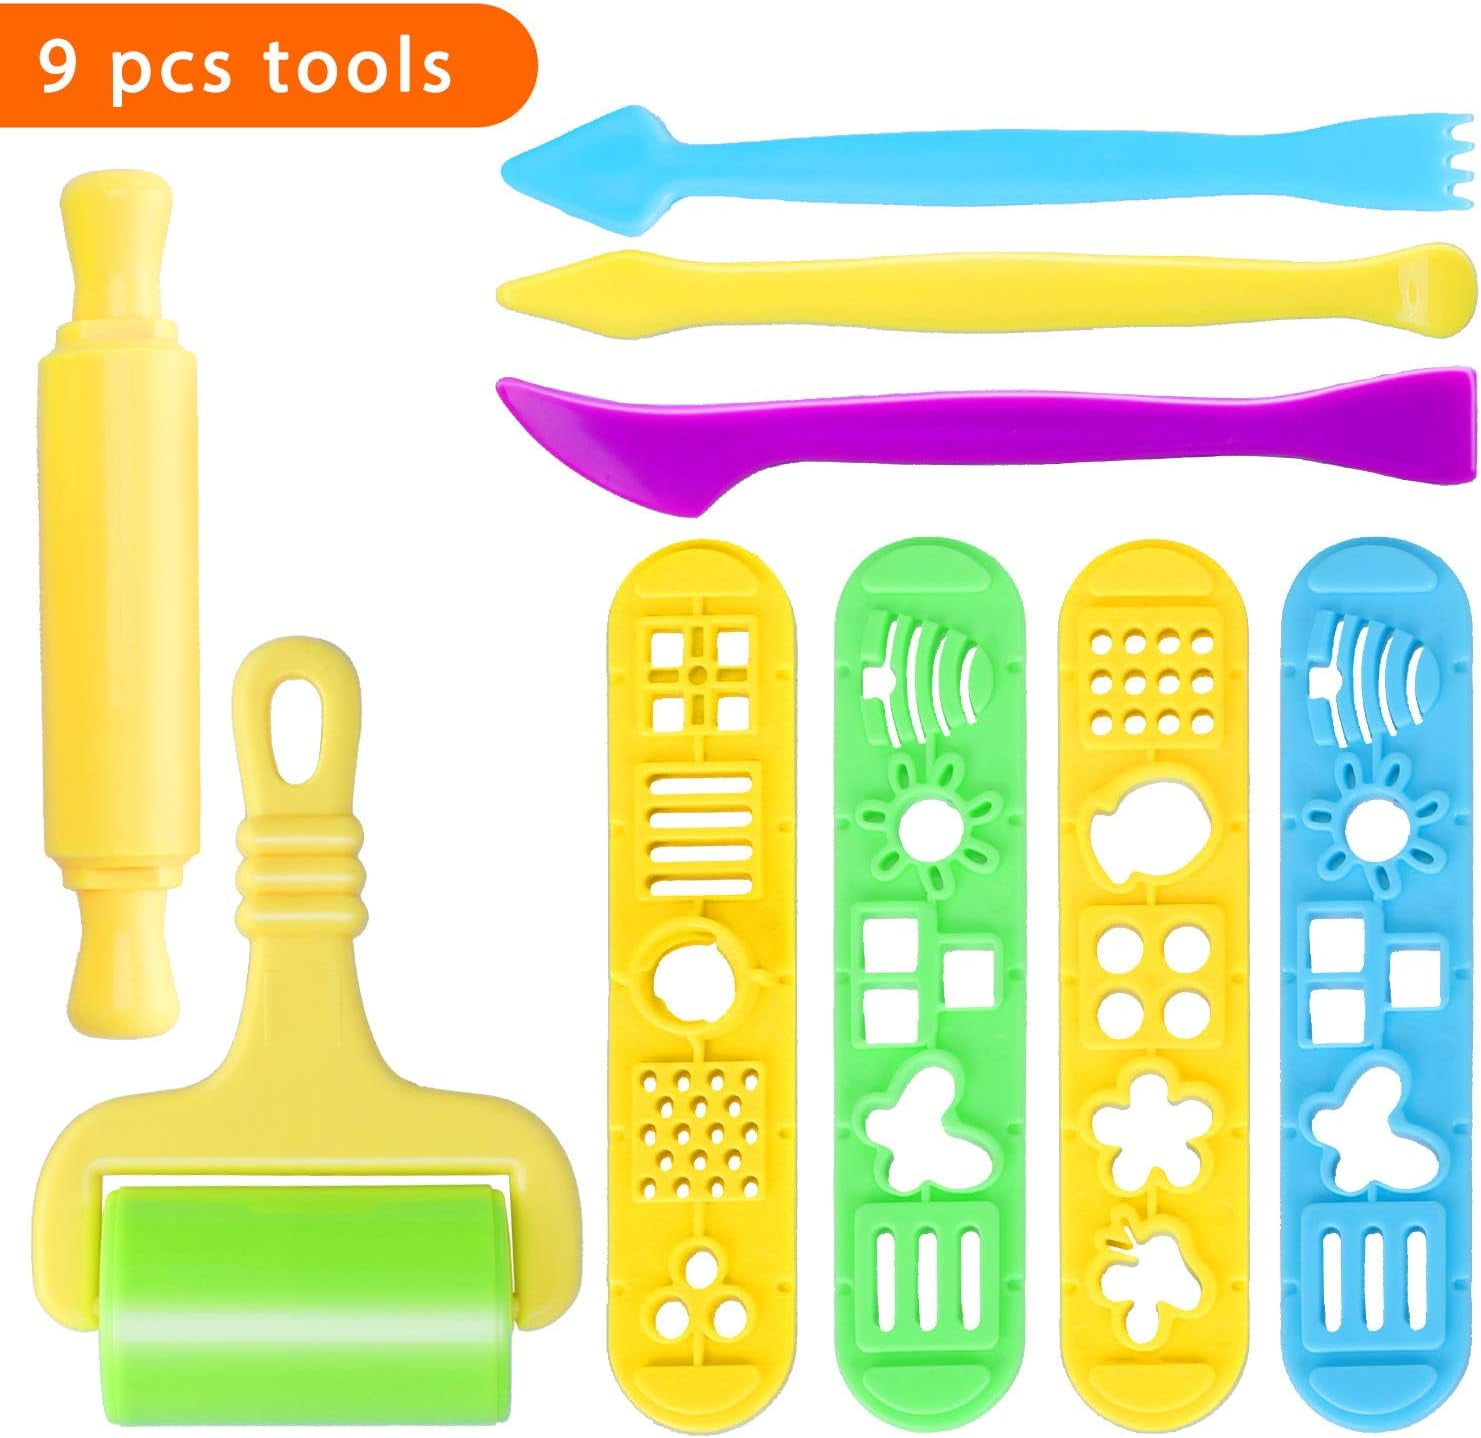 Play Dough Tool Kit With Dough Extruder, Dough Scissors, Playdough Roller &  Knife, 12 Plastic Playdough Tools For Kids (random Colors)